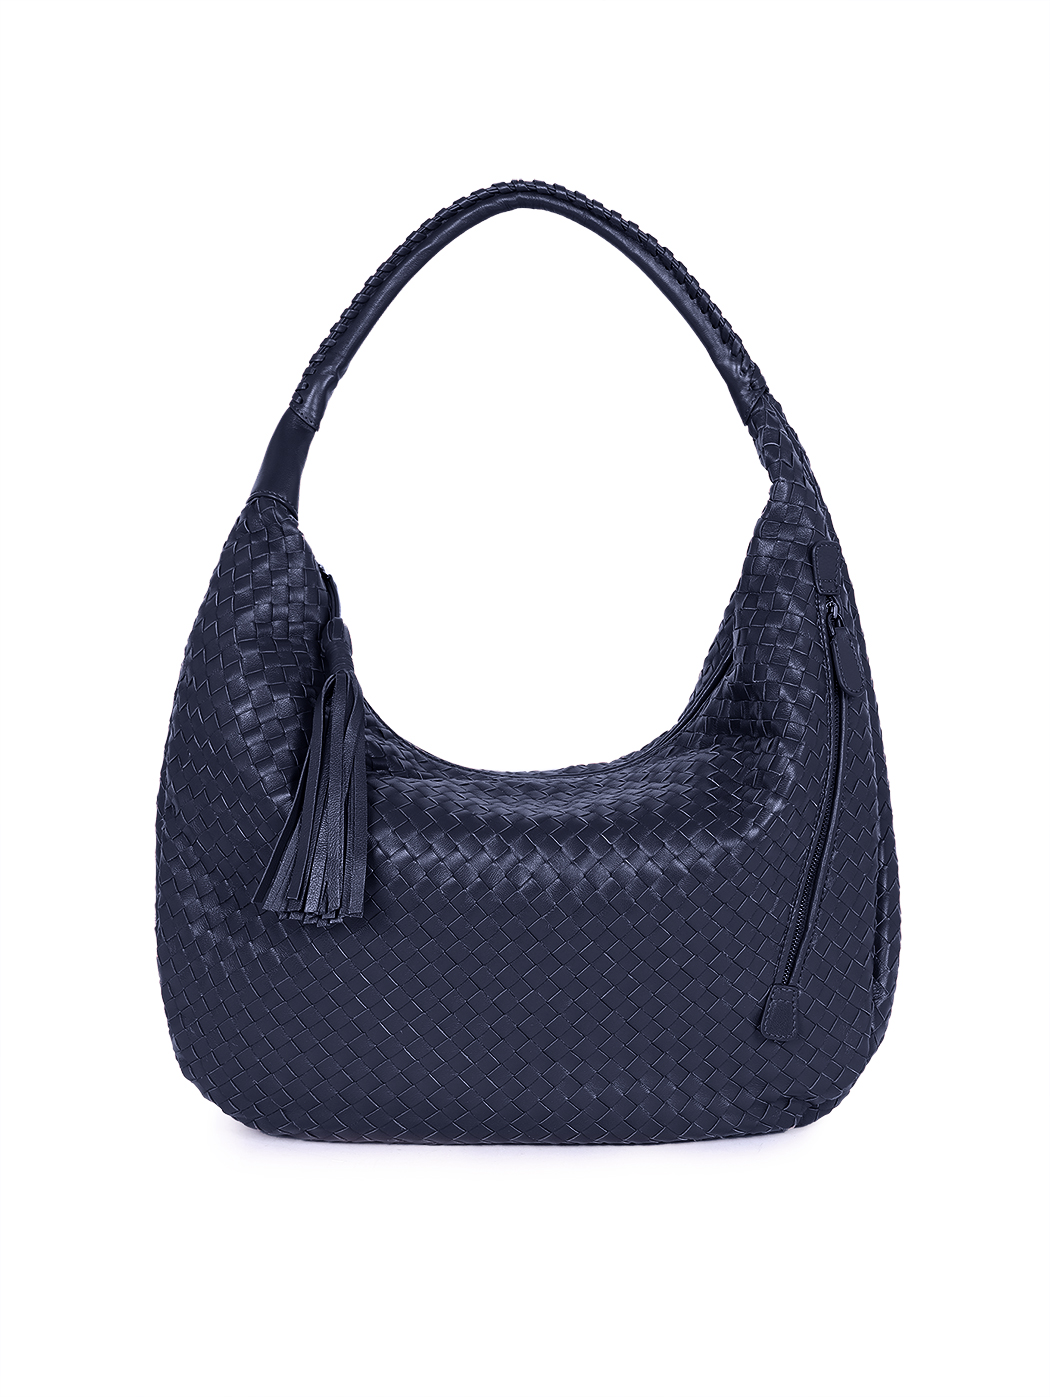 Плетеная сумка хобо коллекции Intrecci синего цвета